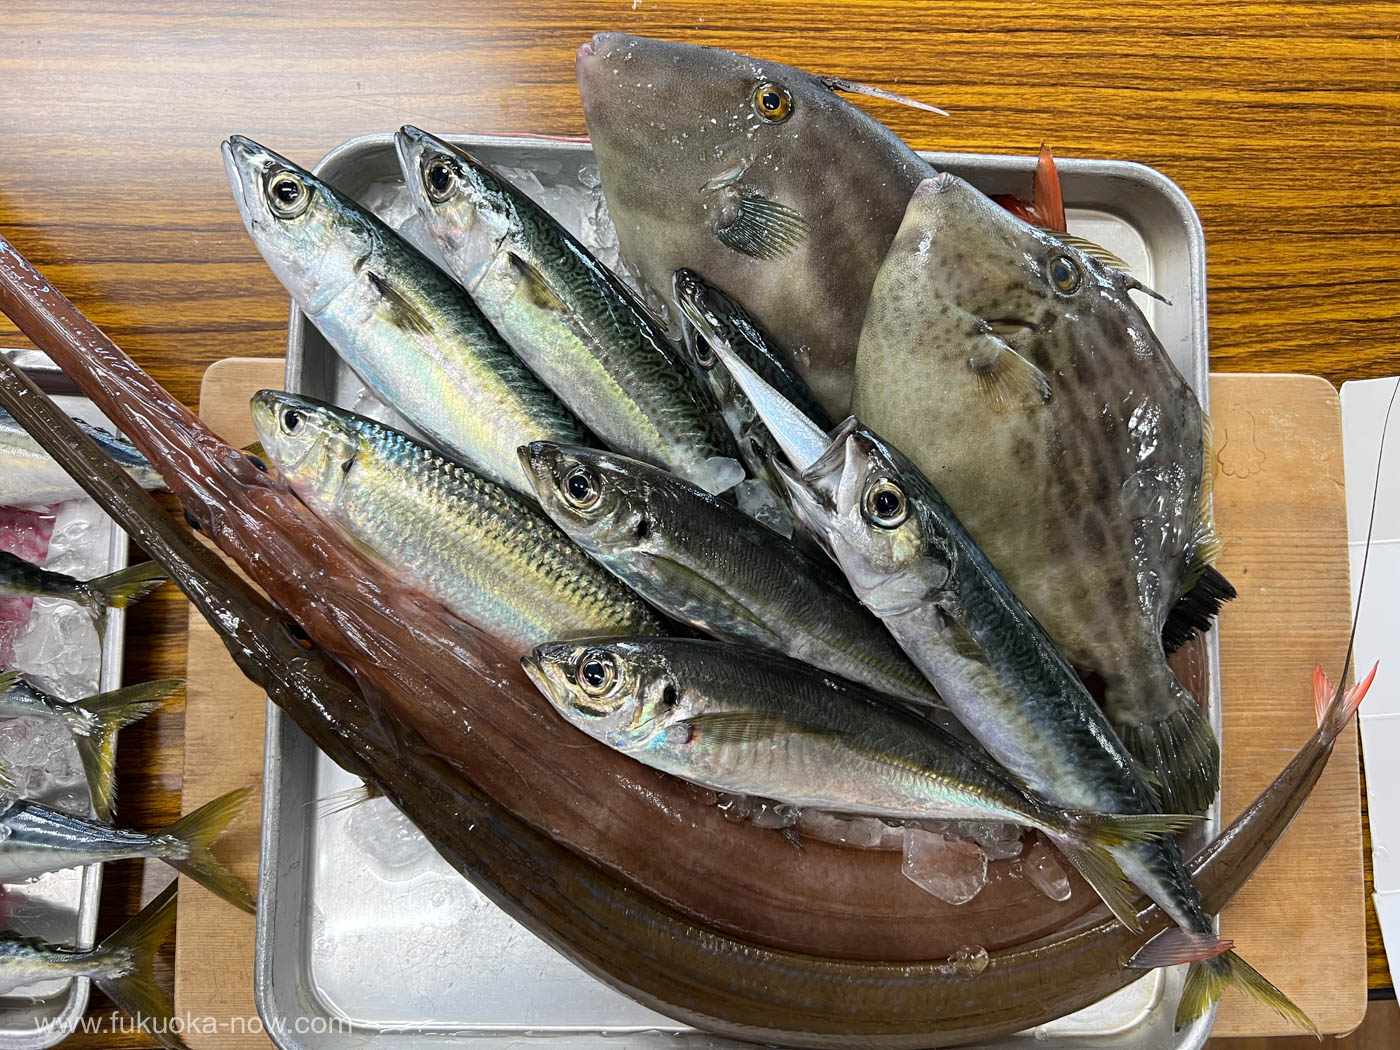 Itoshima local fish, 糸島の姫島で獲れた地魚。口が長くて赤い魚はヤガラ